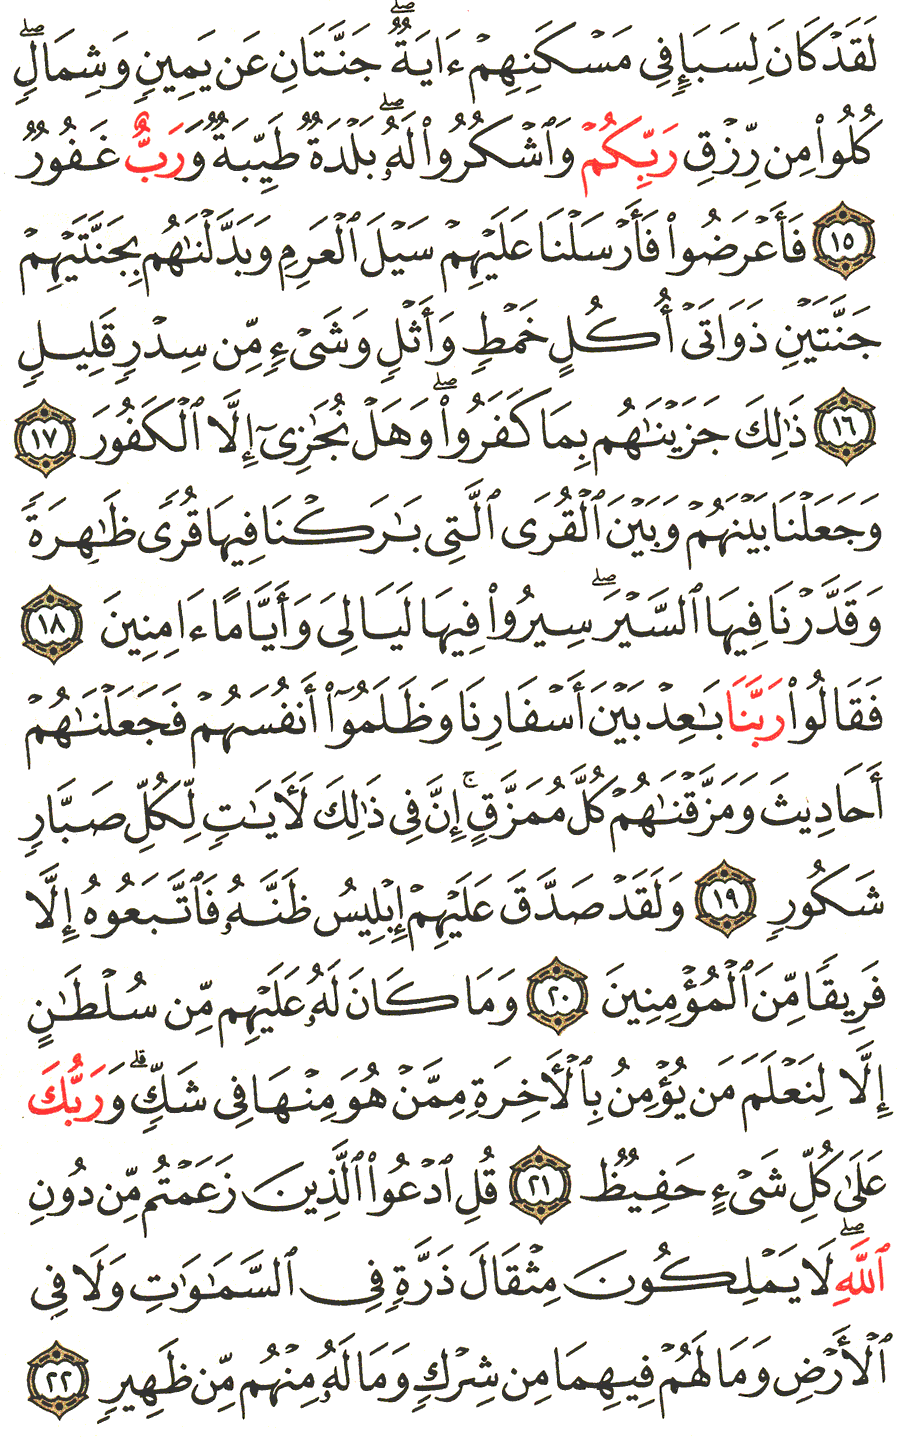 الصفحة 430 من القرآن الكريم